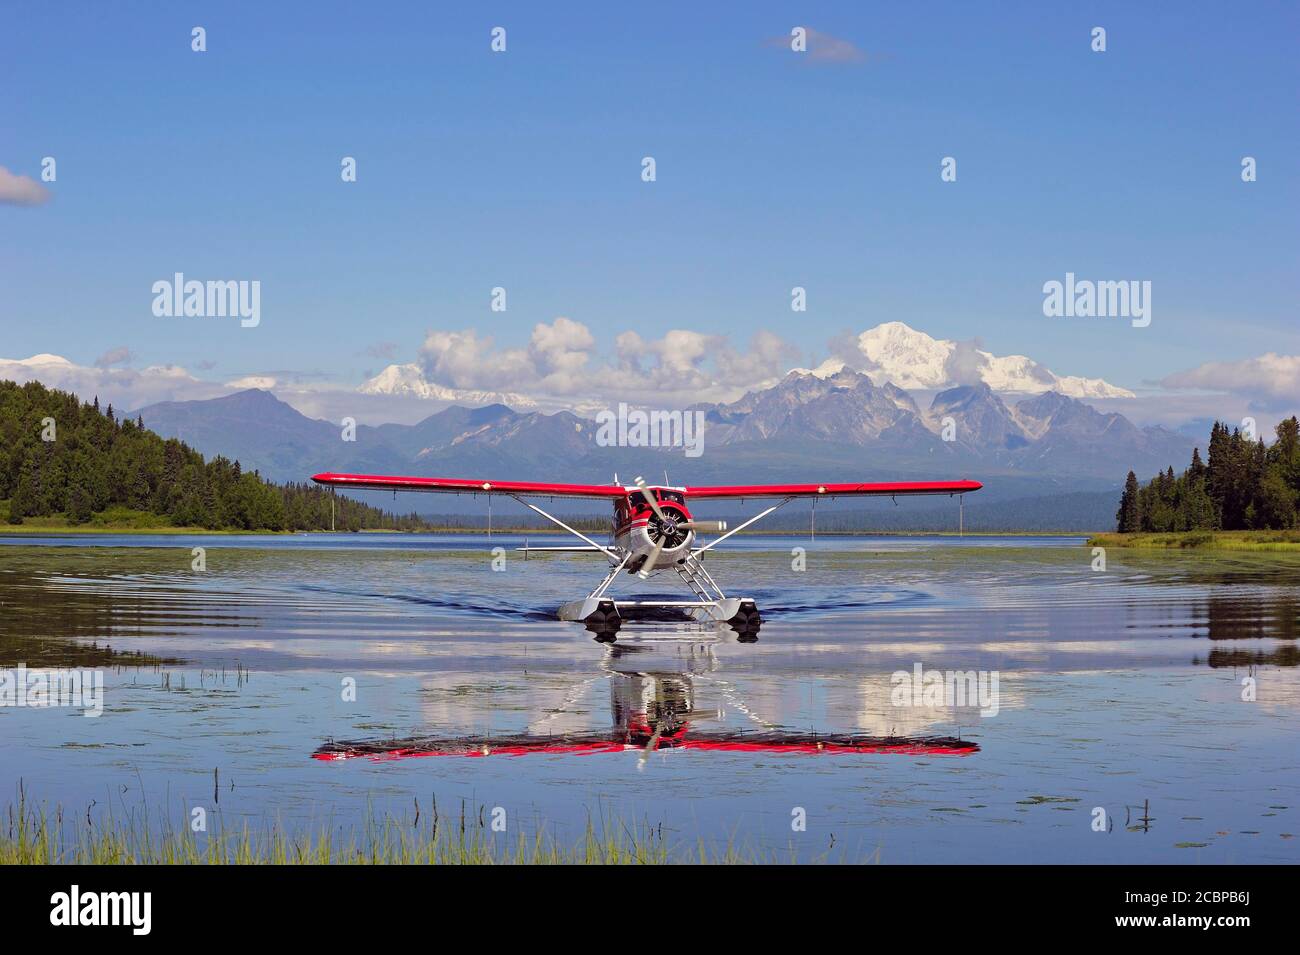 Seaplane Beaver de Havilland lands on a lake off snow-covered mountain Denali, Alaska, USA Stock Photo